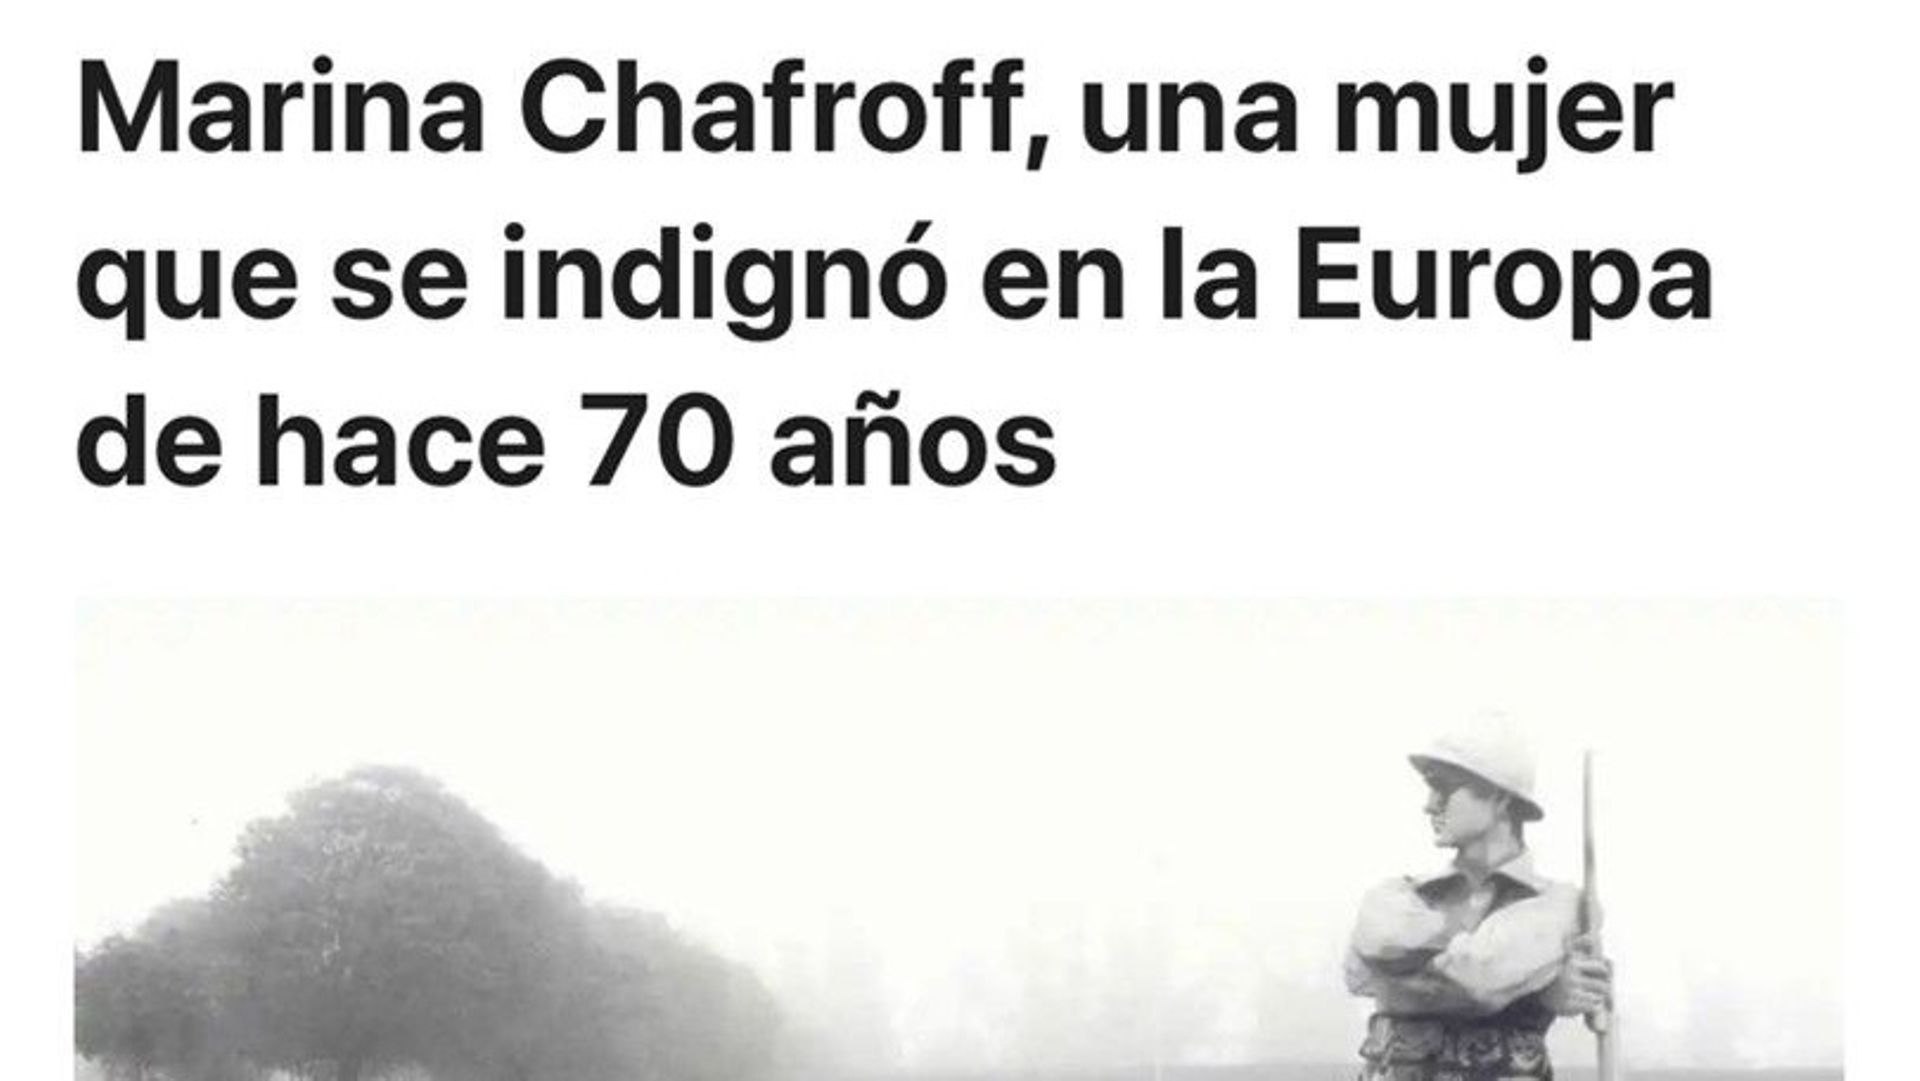 Capture d'écran du blog https://ensondeluz.com/2012/01/31/marina-chafroff-una-mujer-que-se-indigno-en-la-europa-de-hace-70-anos/ 